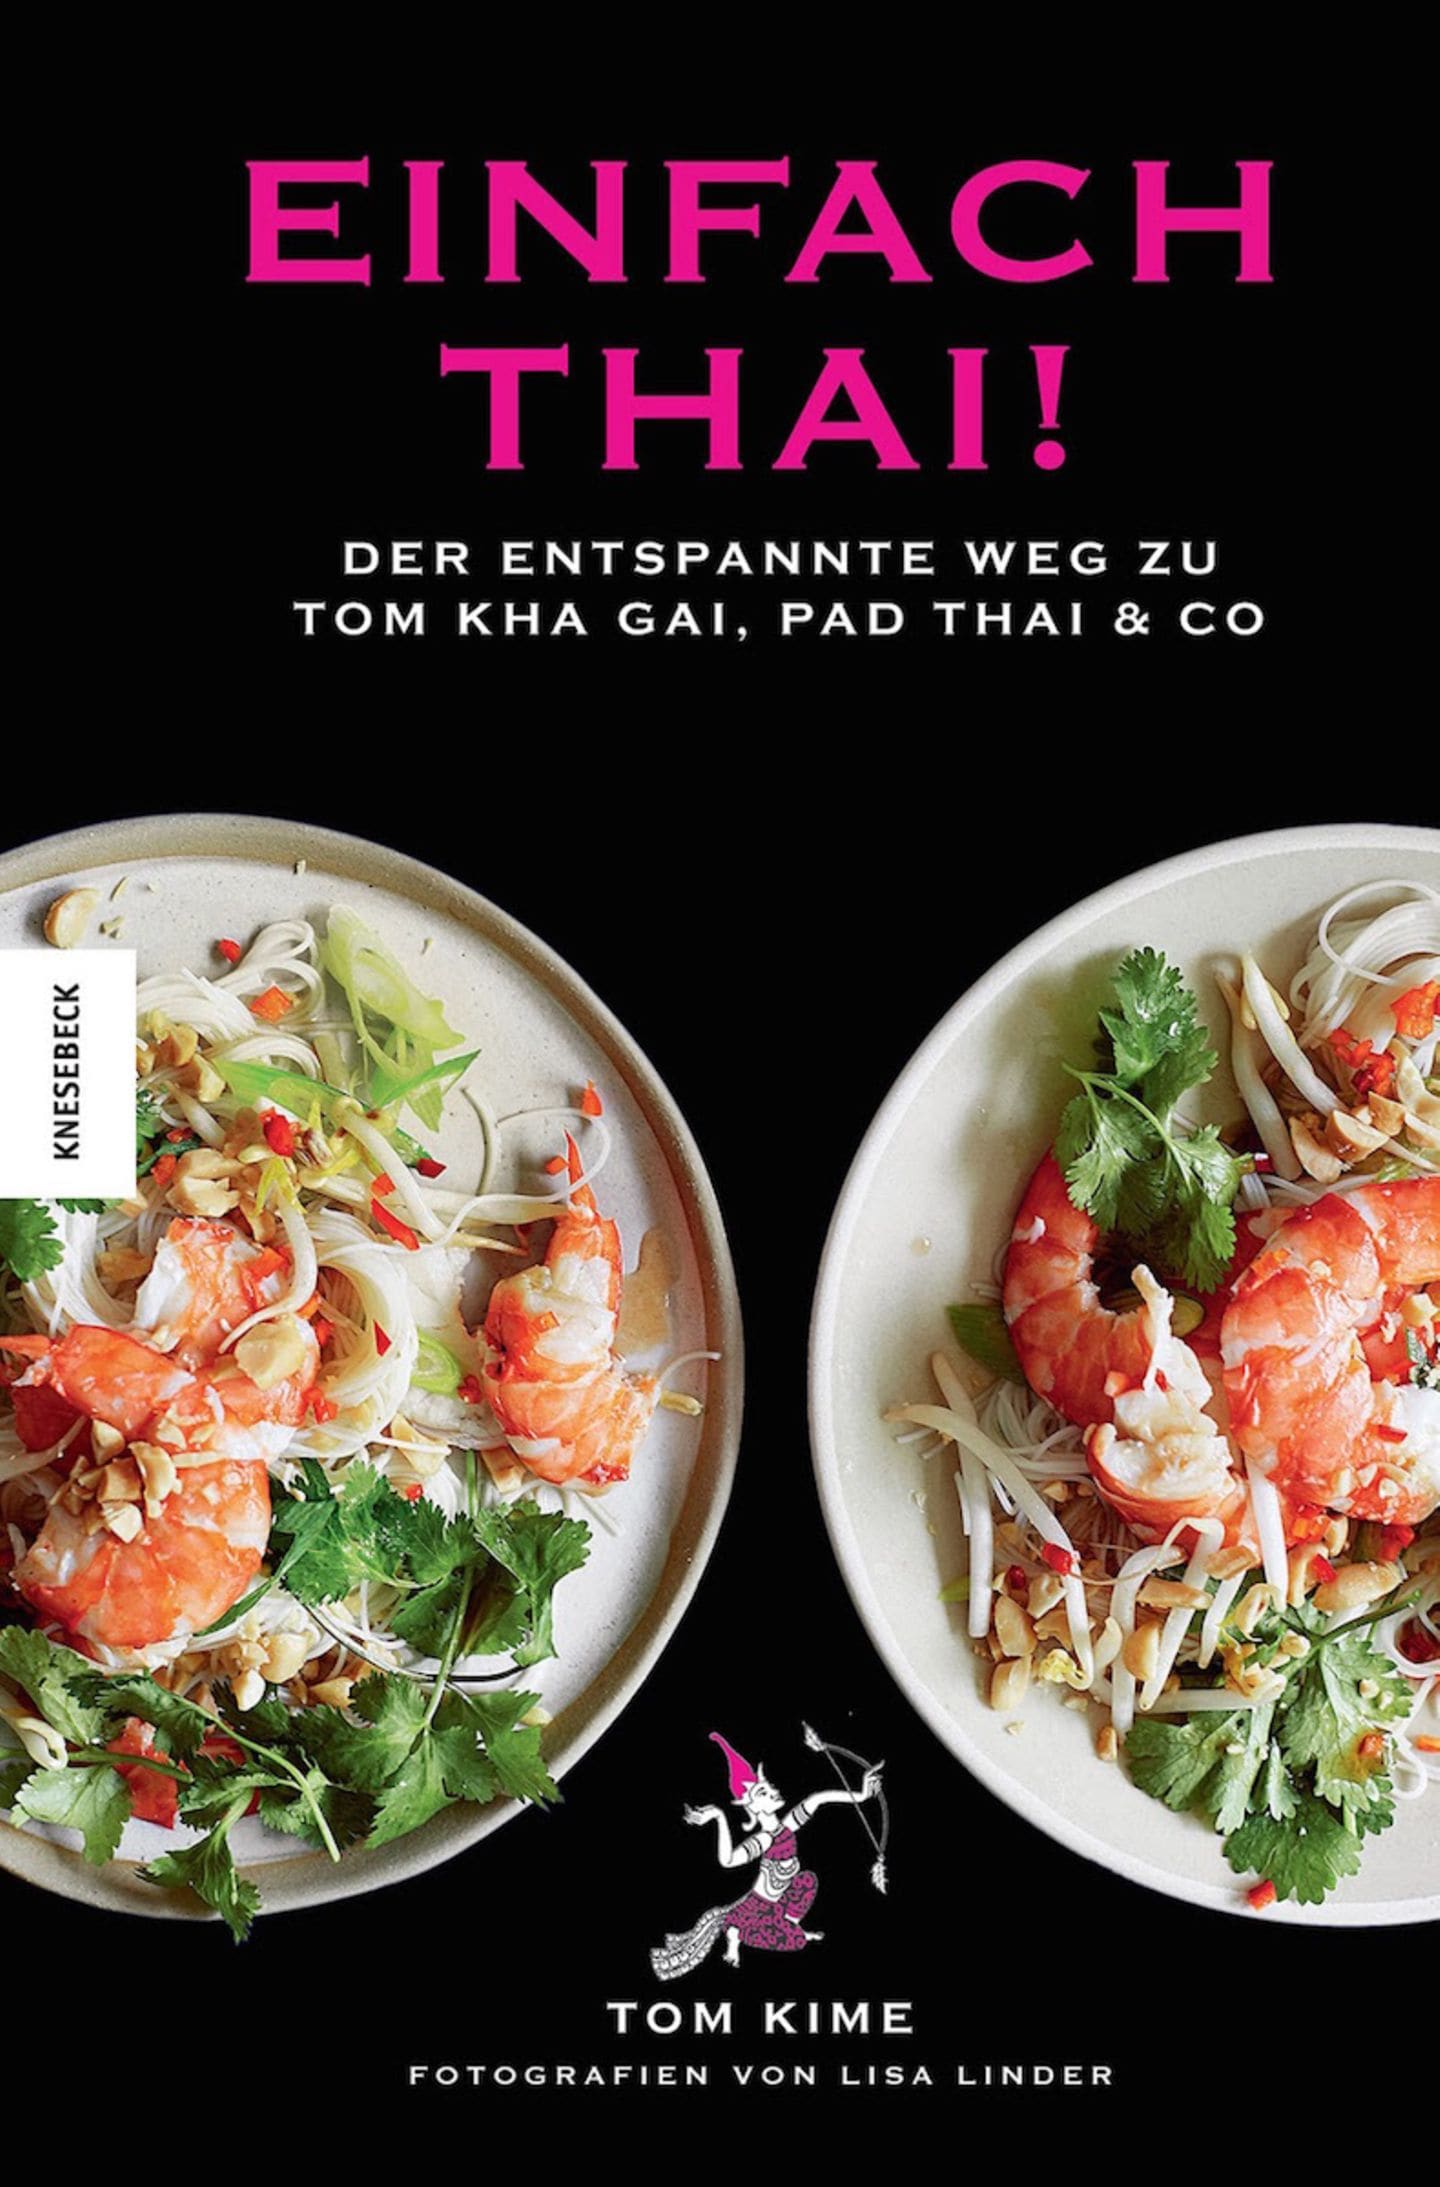 Kochbuch von Tom Kime "Einfach Thai!"